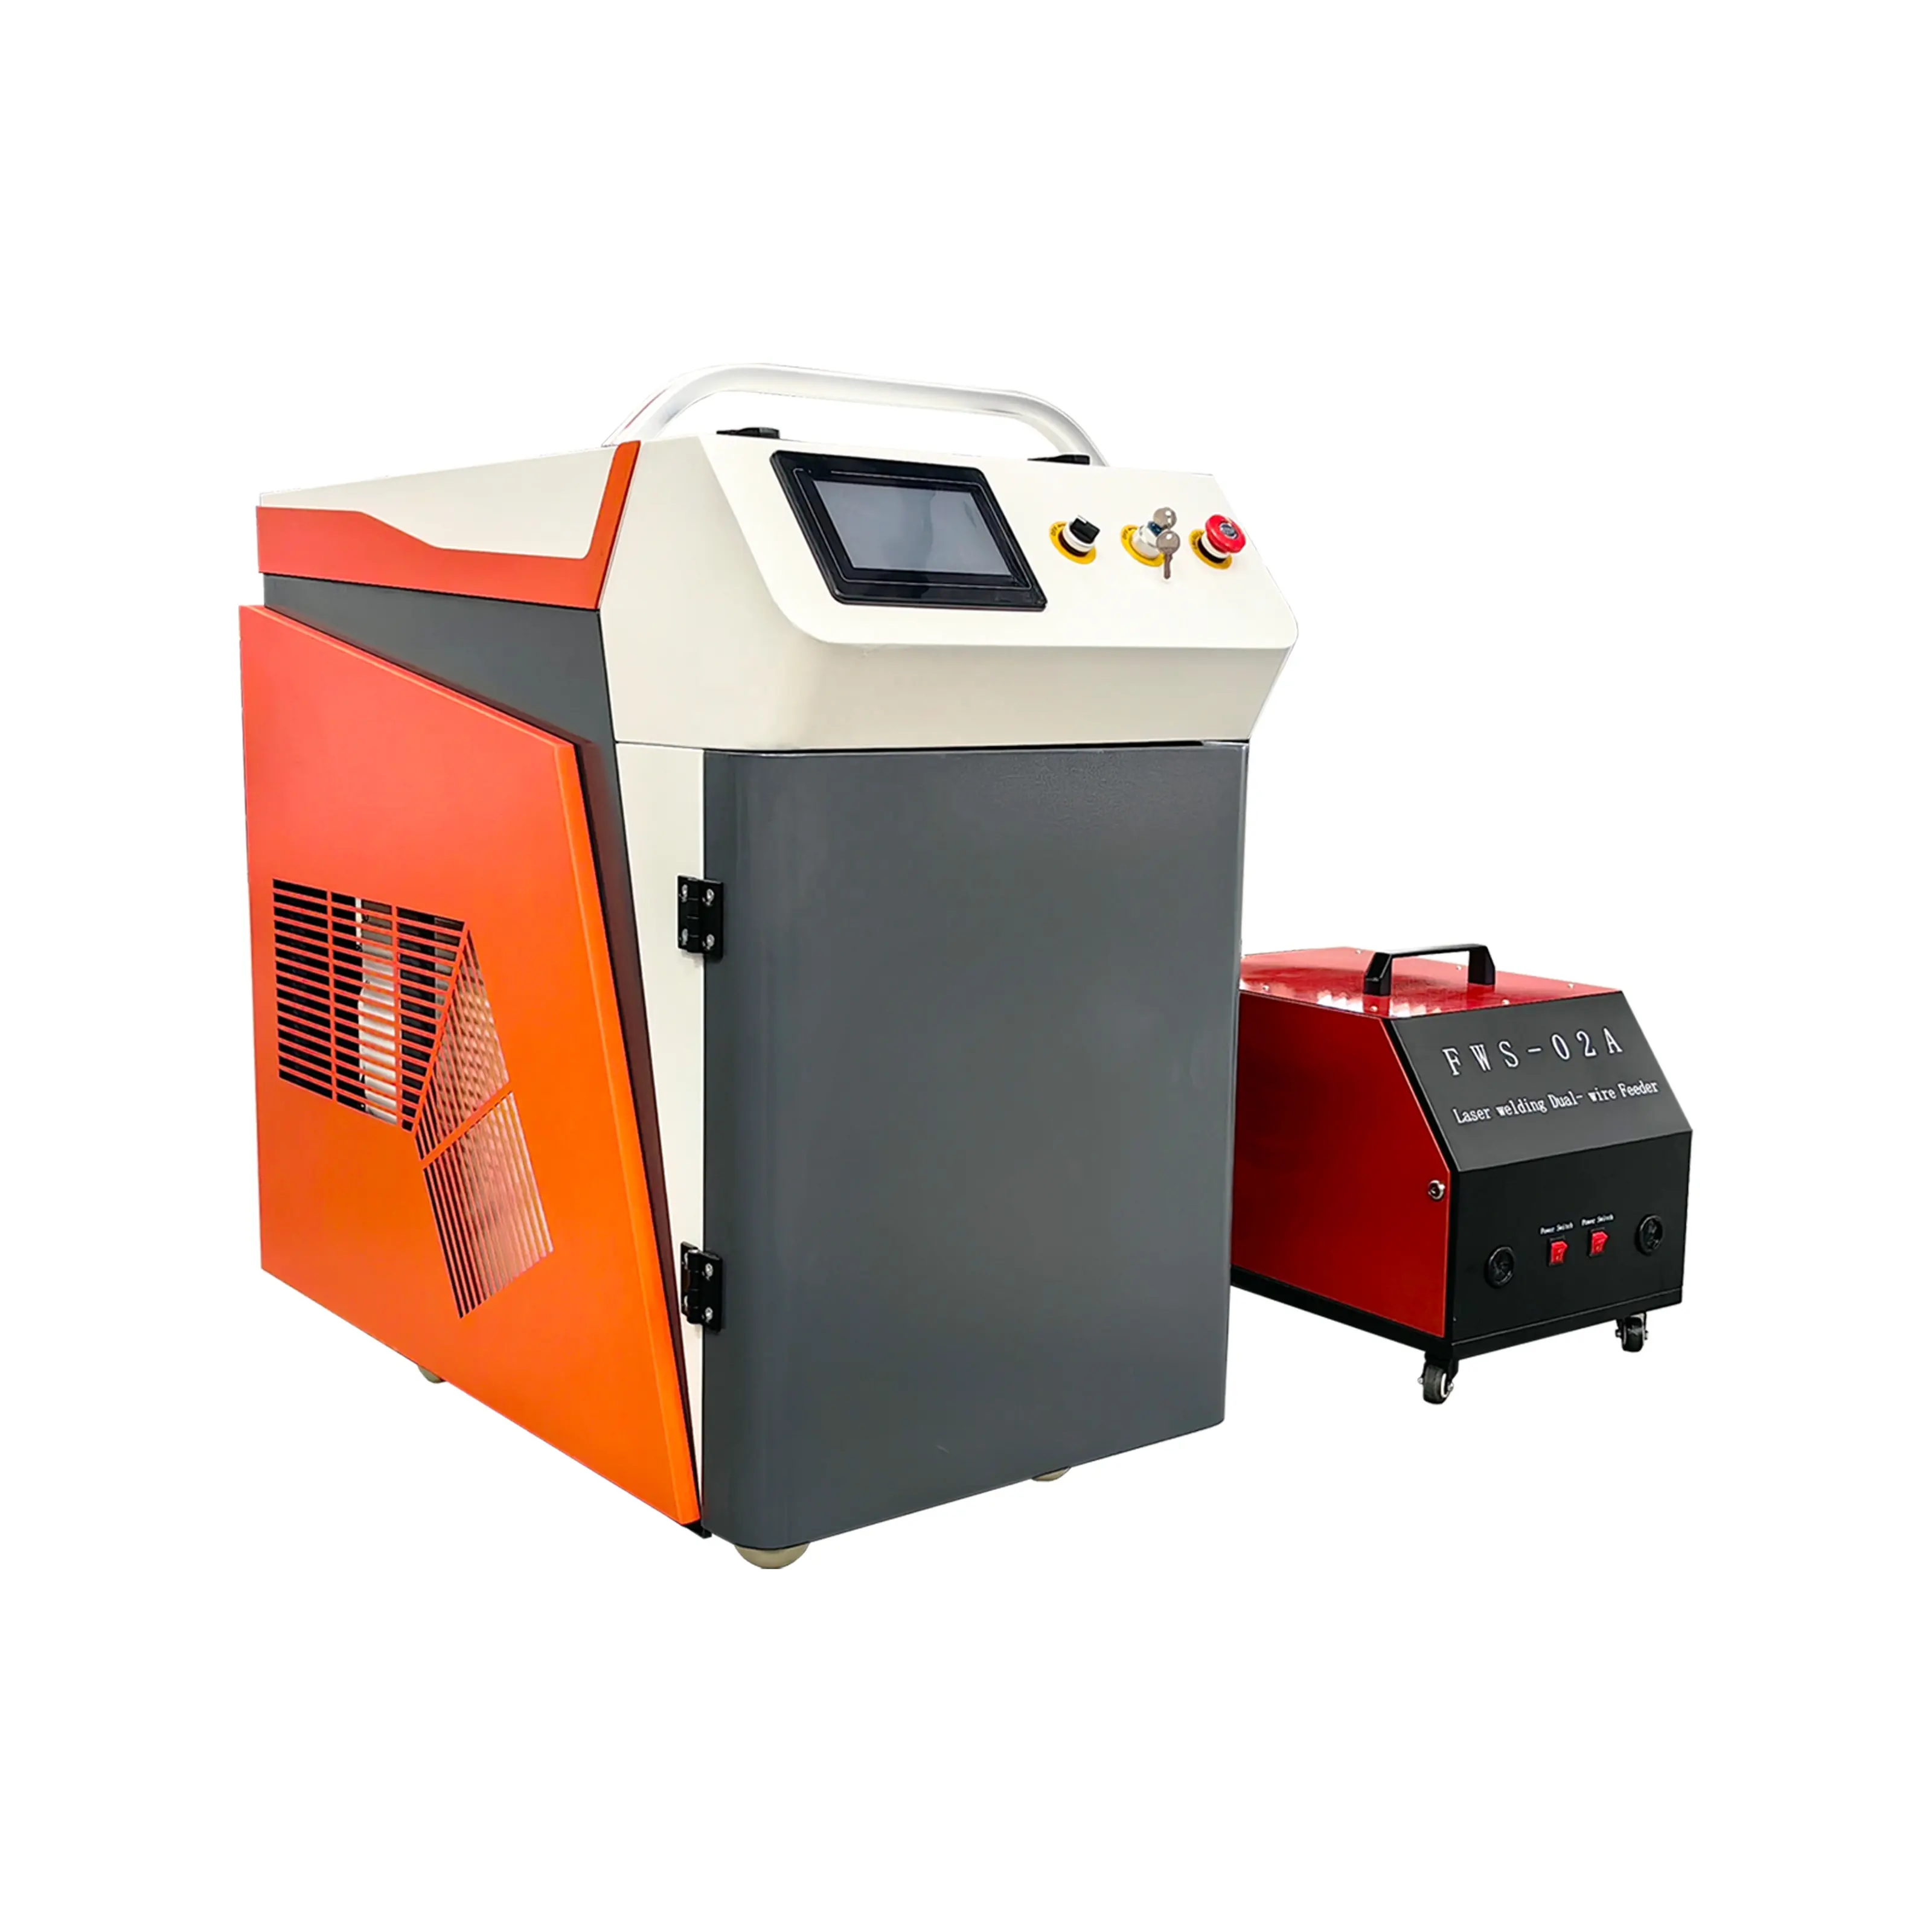 HUAXIA nuovo prodotto CNC 3 in 1 macchina di saldatura laser in acciaio inox metallo cutter saldatrice tre funzioni di saldatura macchina